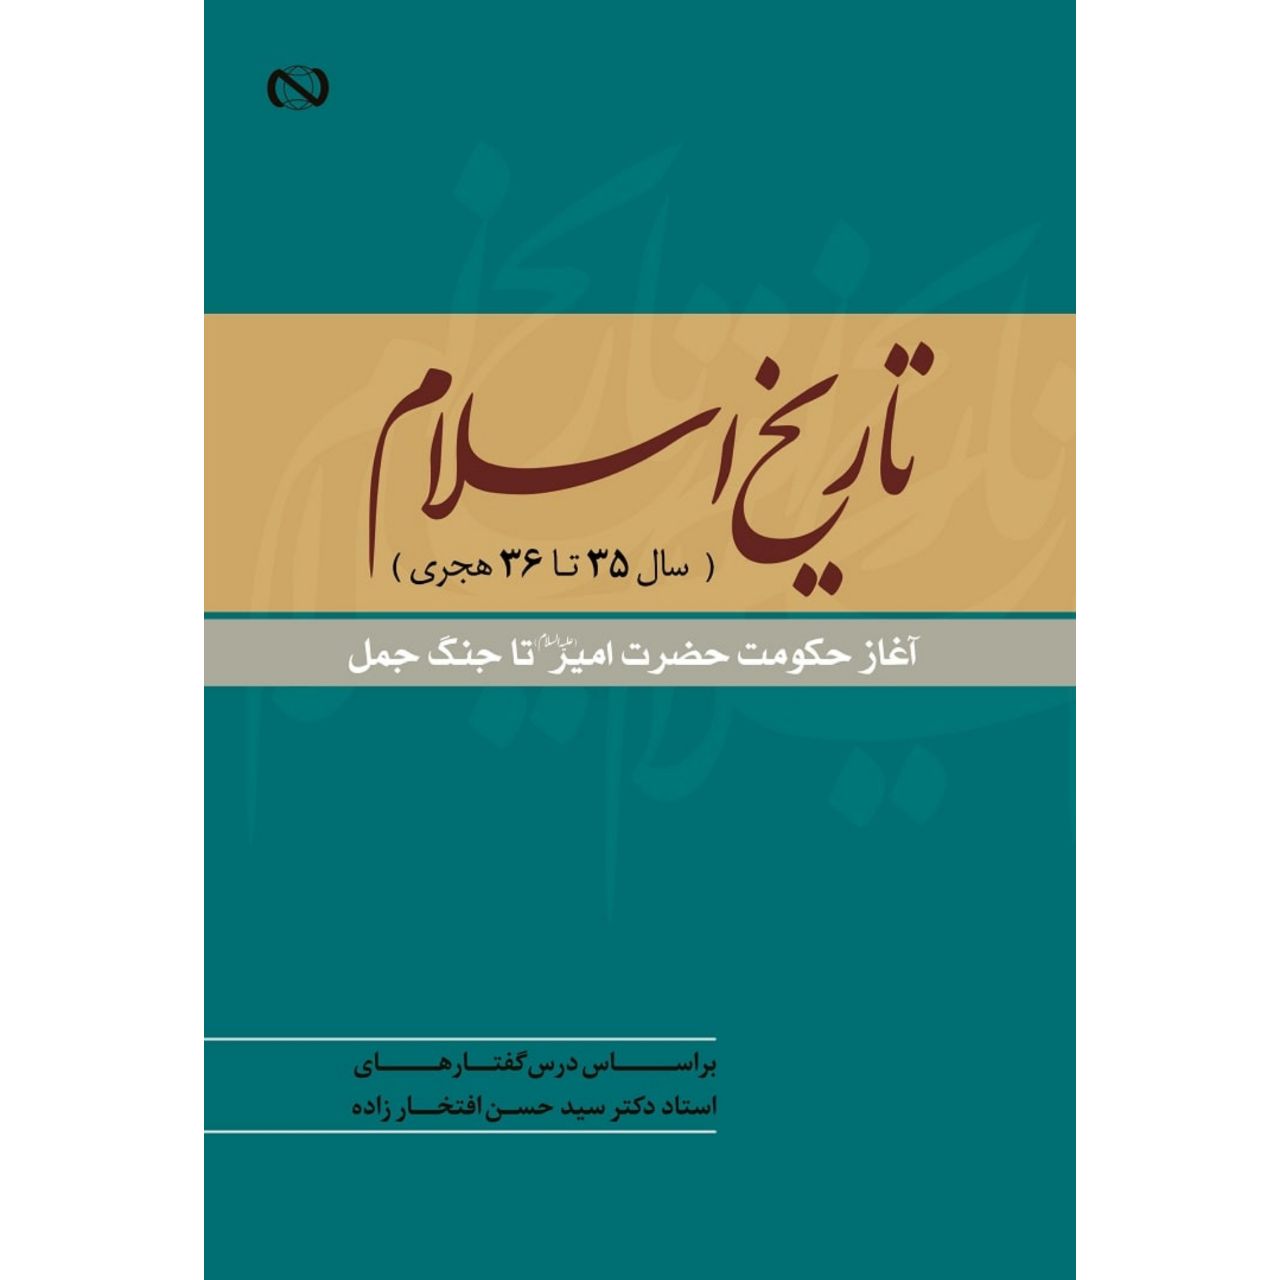 کتاب «تاریخ اسلام، آغاز حکومت حضرت امیر تا جنگ جمل» منتشر شد